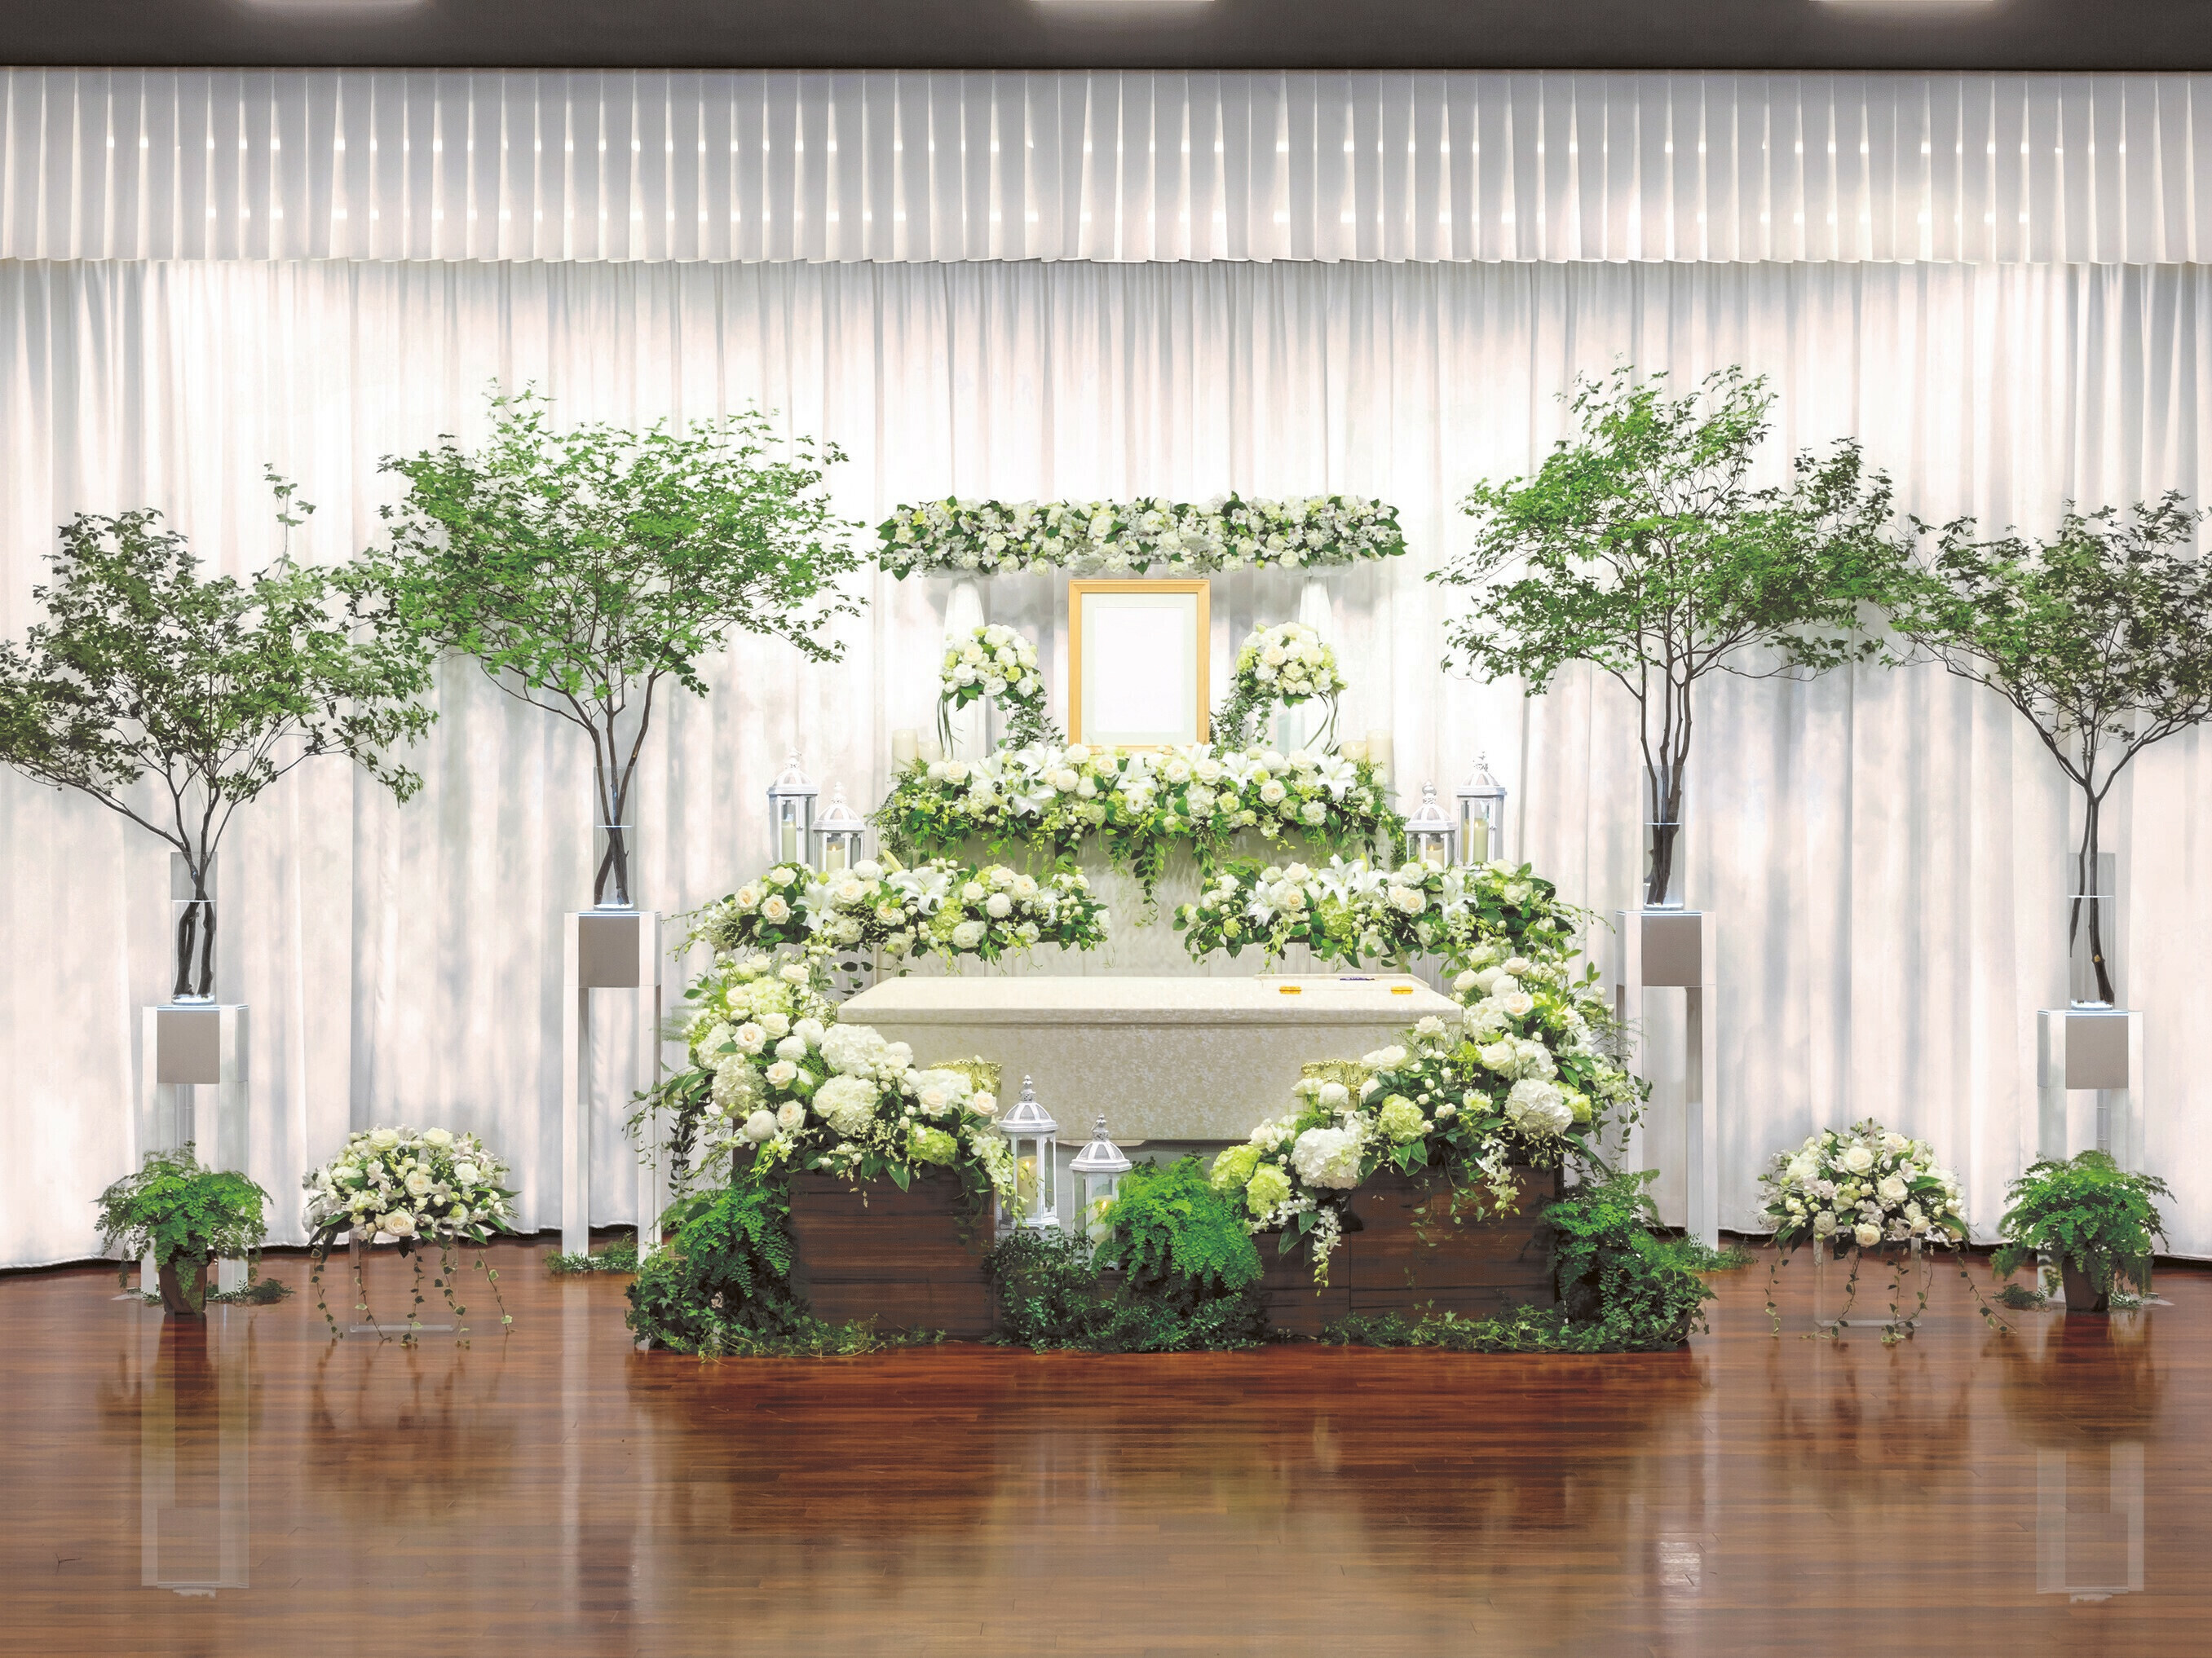 日比谷花壇葬儀大手セレモアと提携し葬儀プラン商品を共同開発